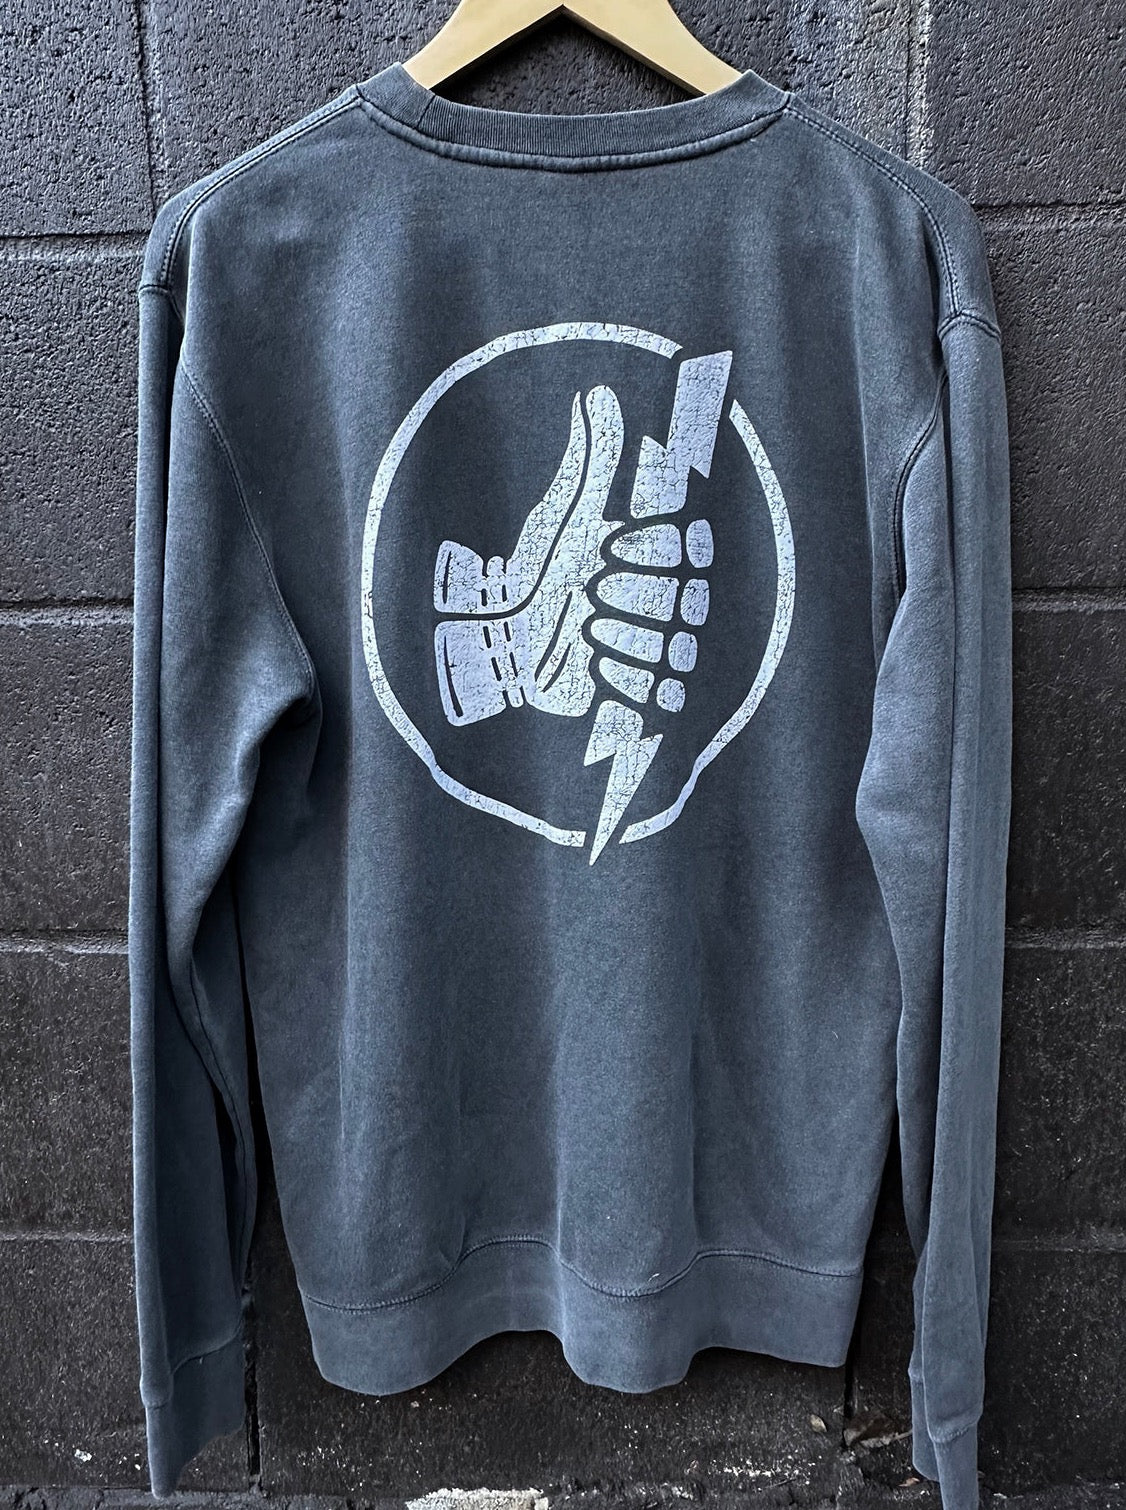 Crew Fleece Sweatshirt "Icon" by NineOneOne Charcoal